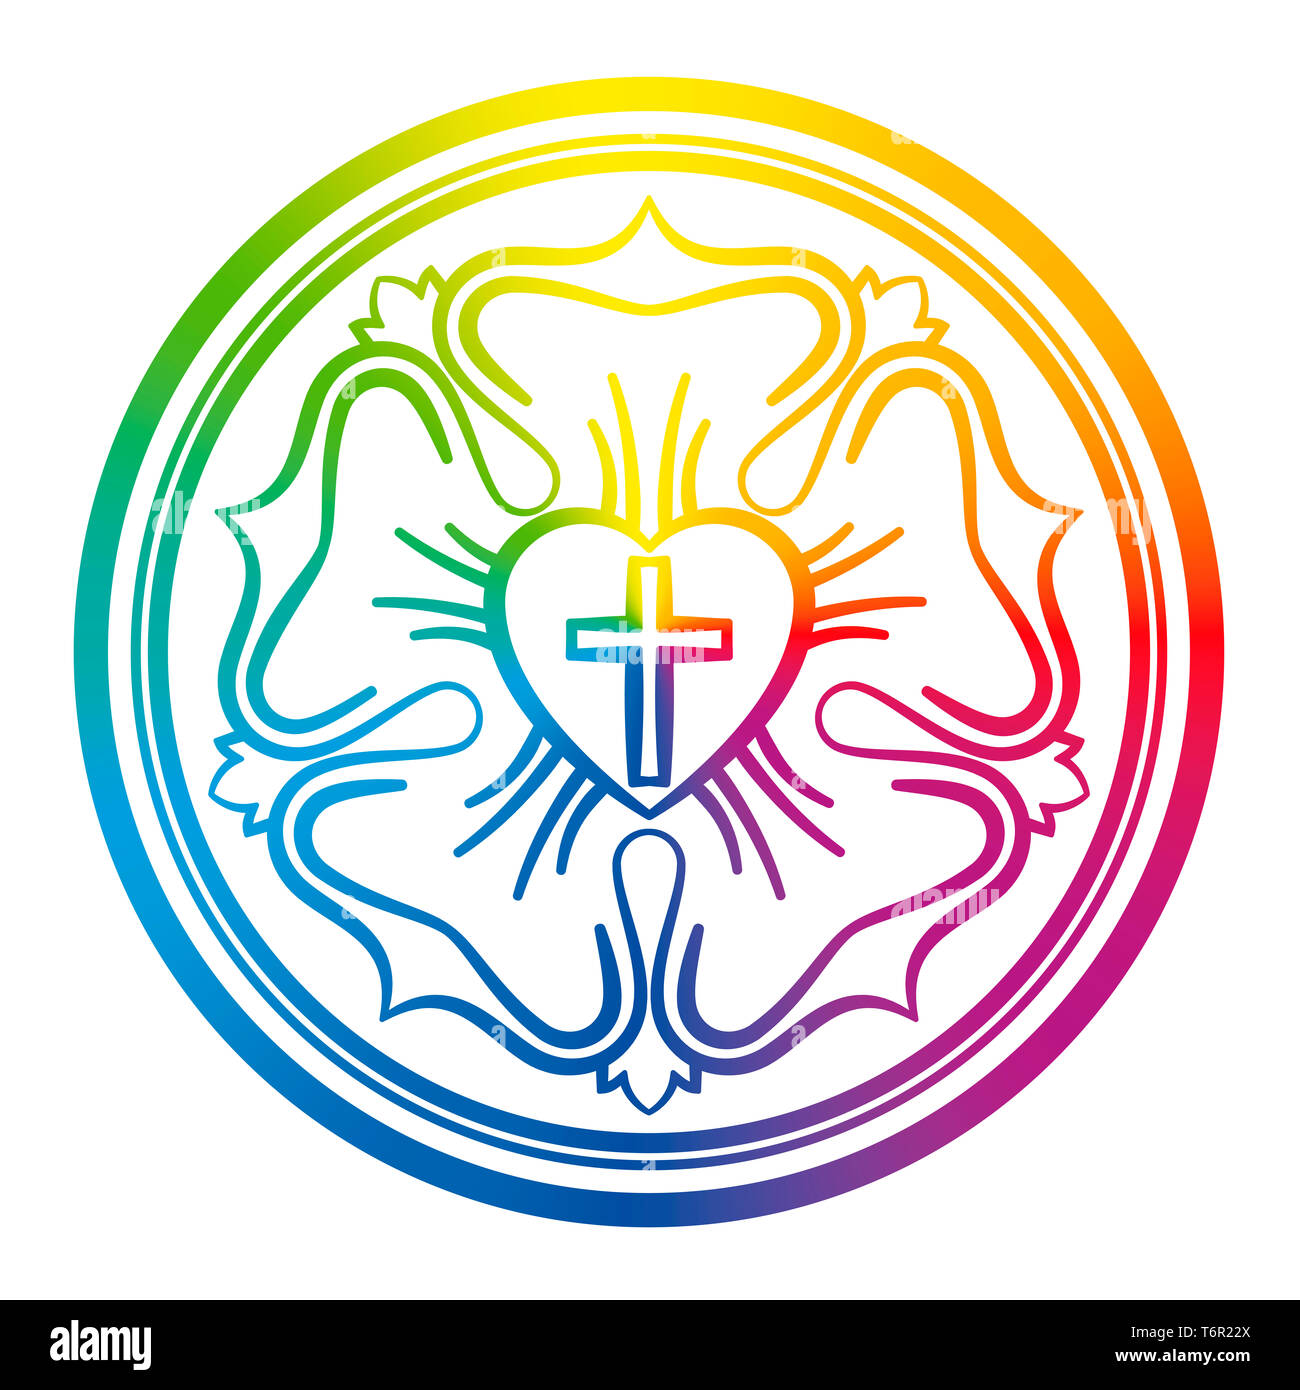 Luther rose Symbol. Rainbow farbige Zeichen des Luthertums und Protestanten, bestehend aus ein Kreuz, ein Herz, eine Rose und ein Ring. Stockfoto